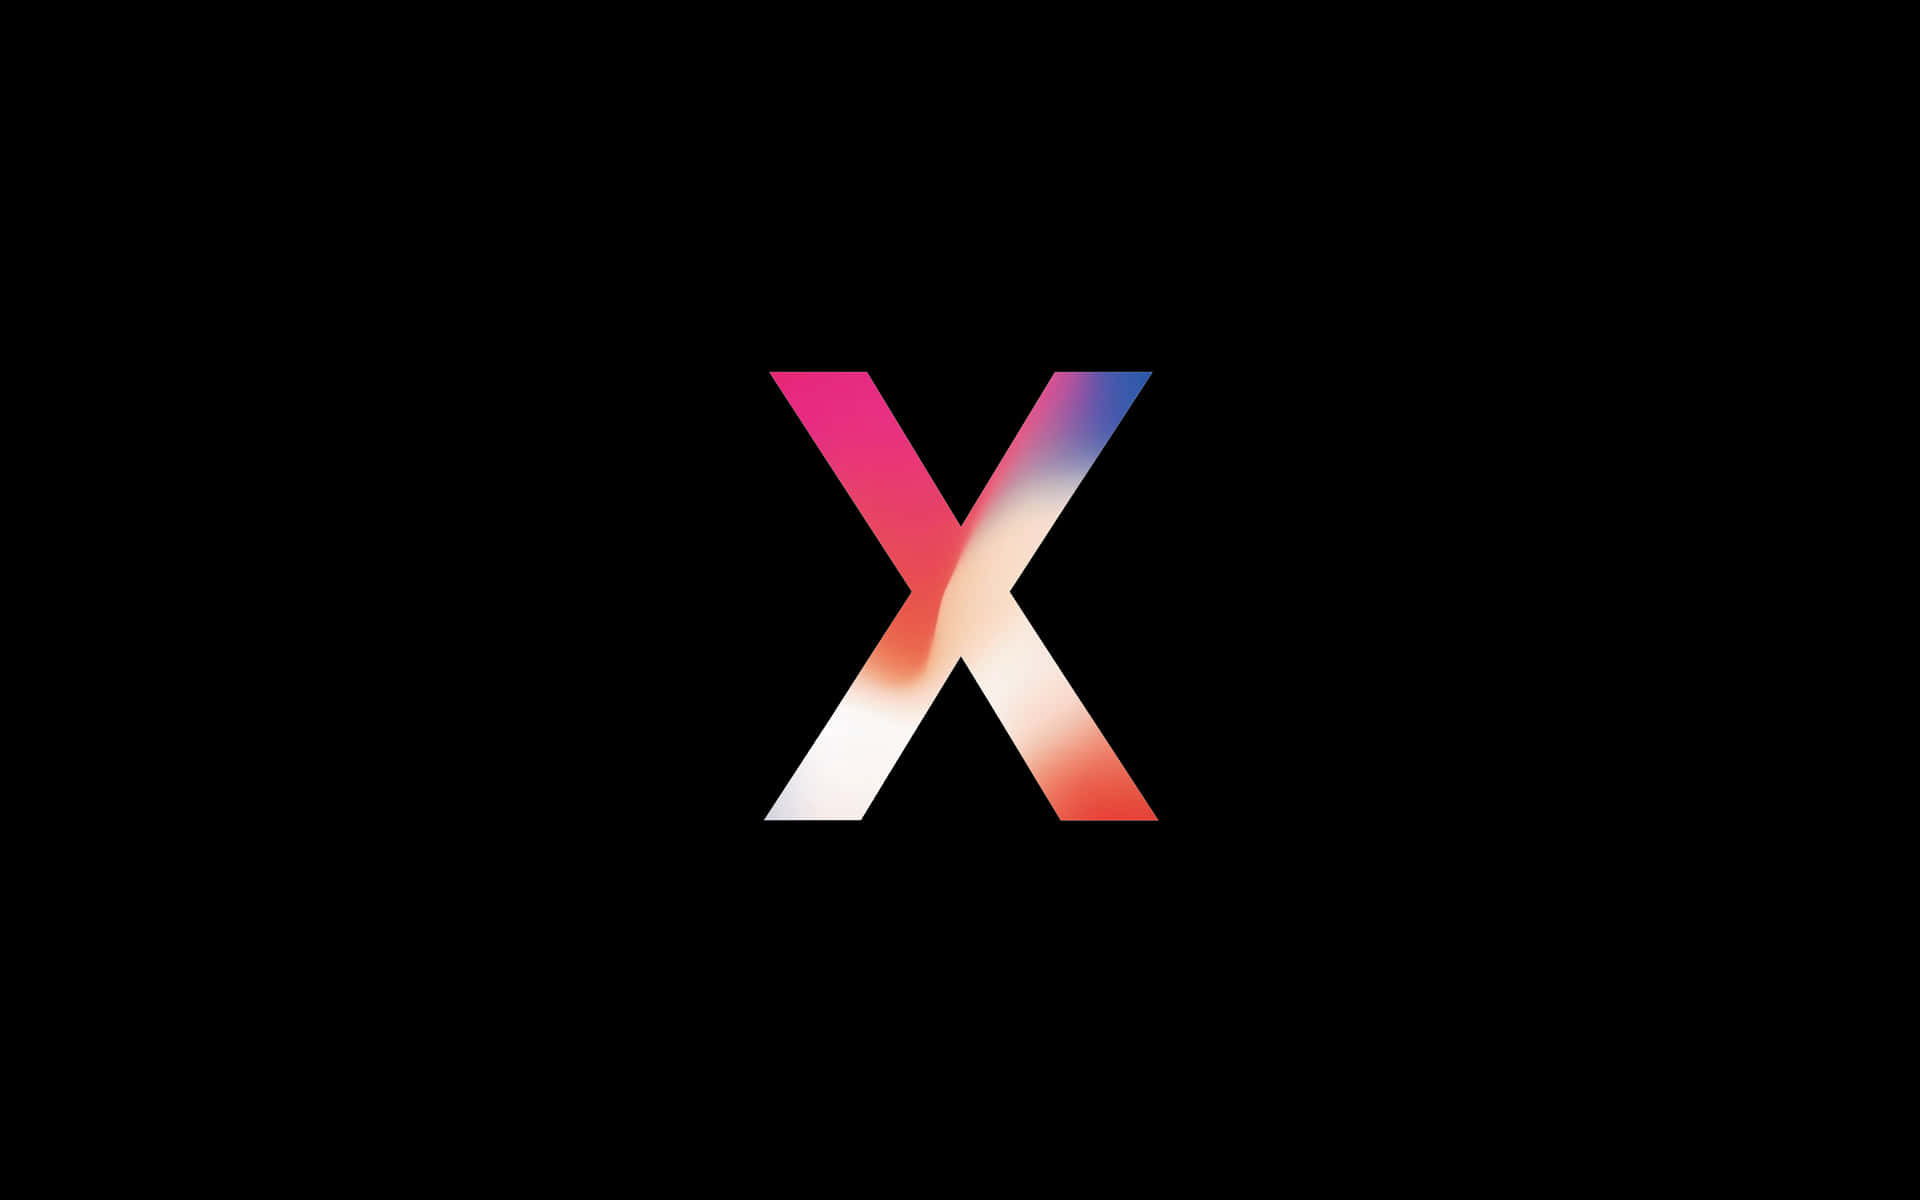 Dasiphone X Mit Dem Ikonischen Apple Logo Wallpaper